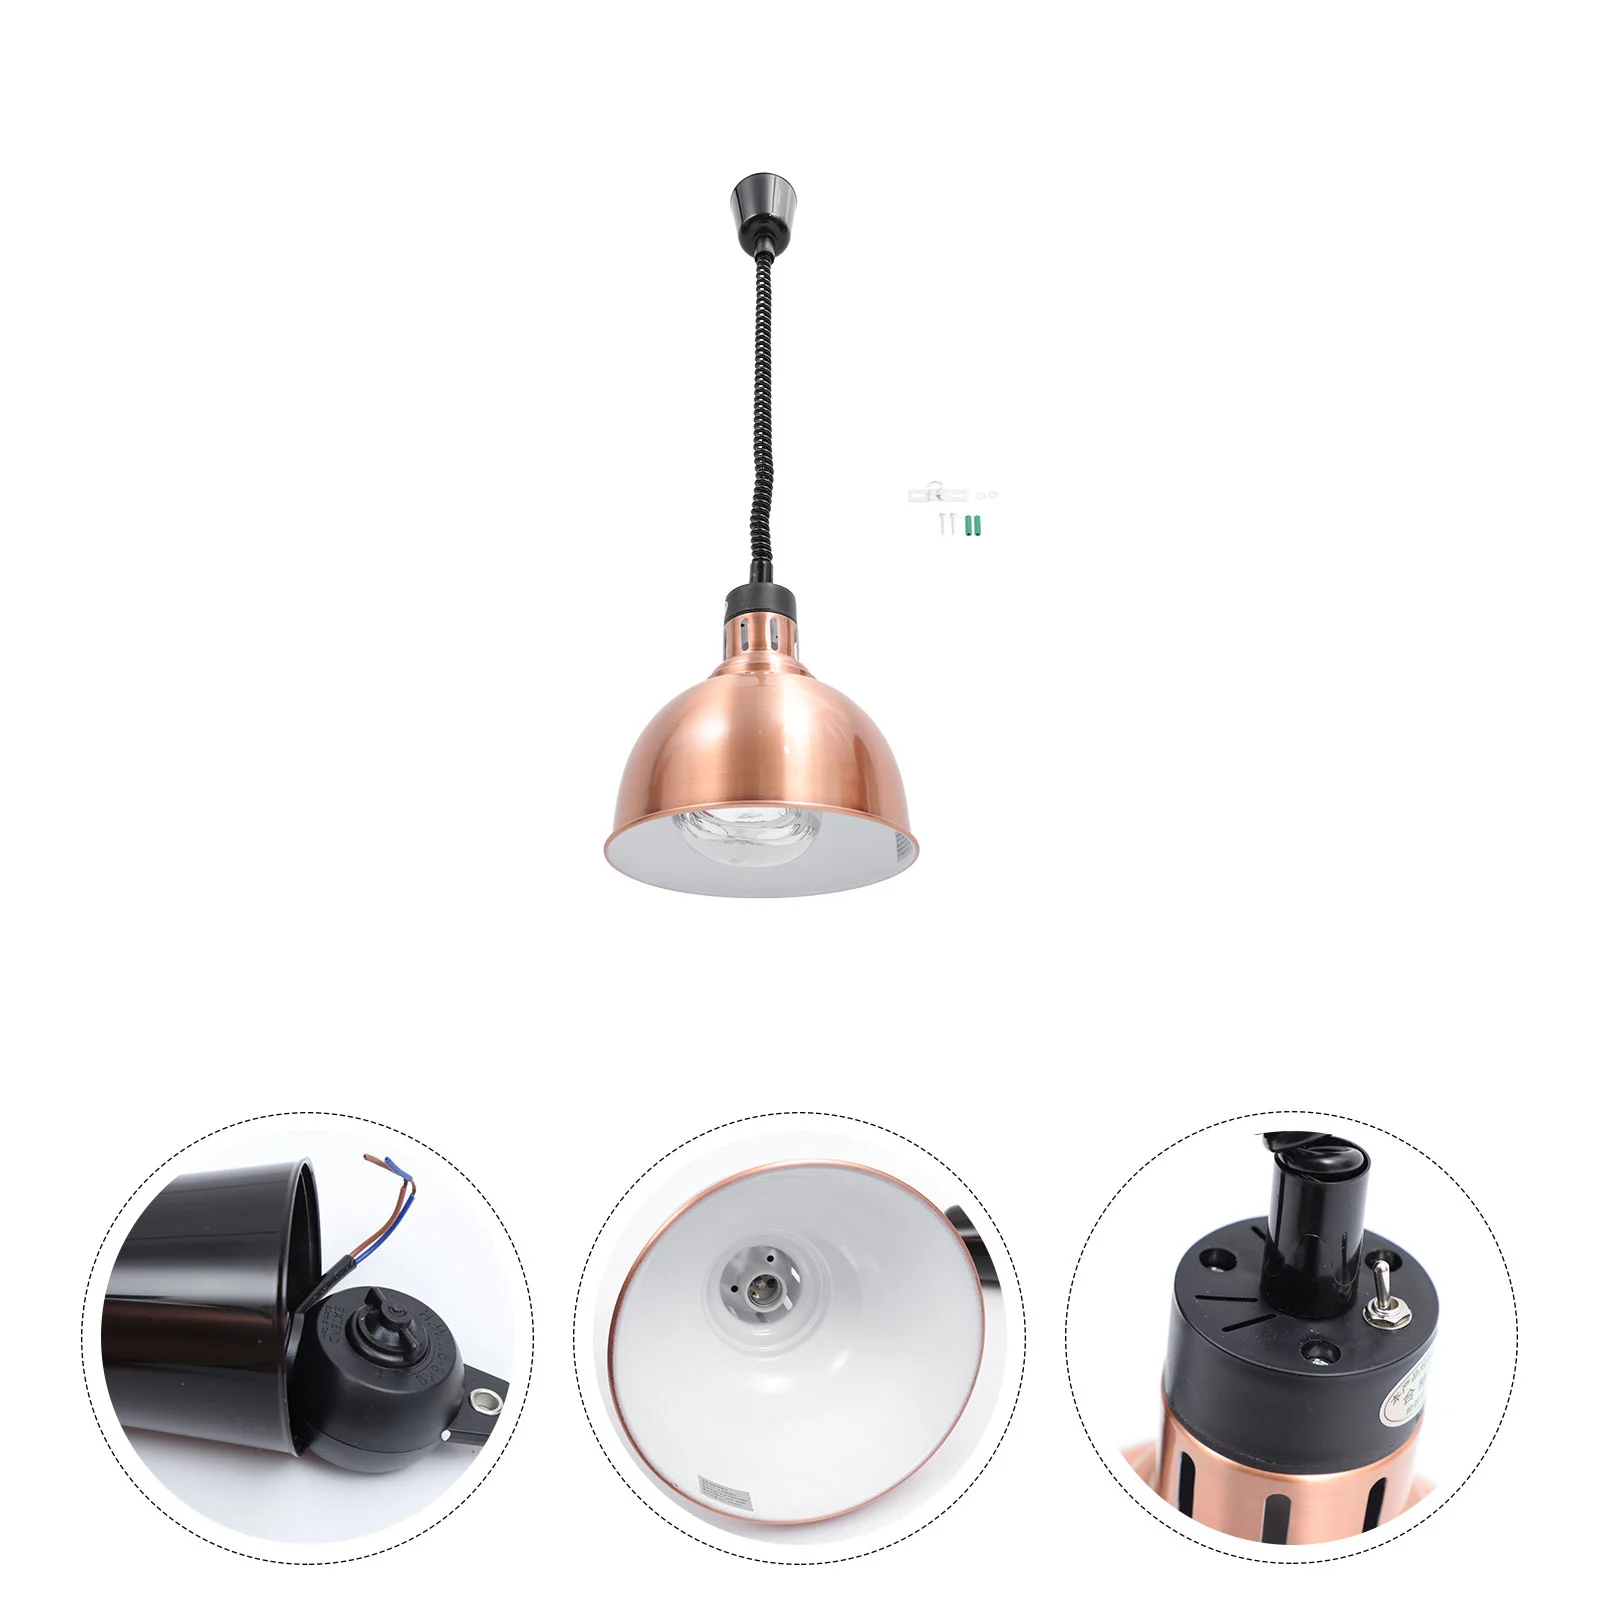 

Подвесной светильник в форме буфета, одноголовочная лампа для подогрева еды (бронза), 1 комплект